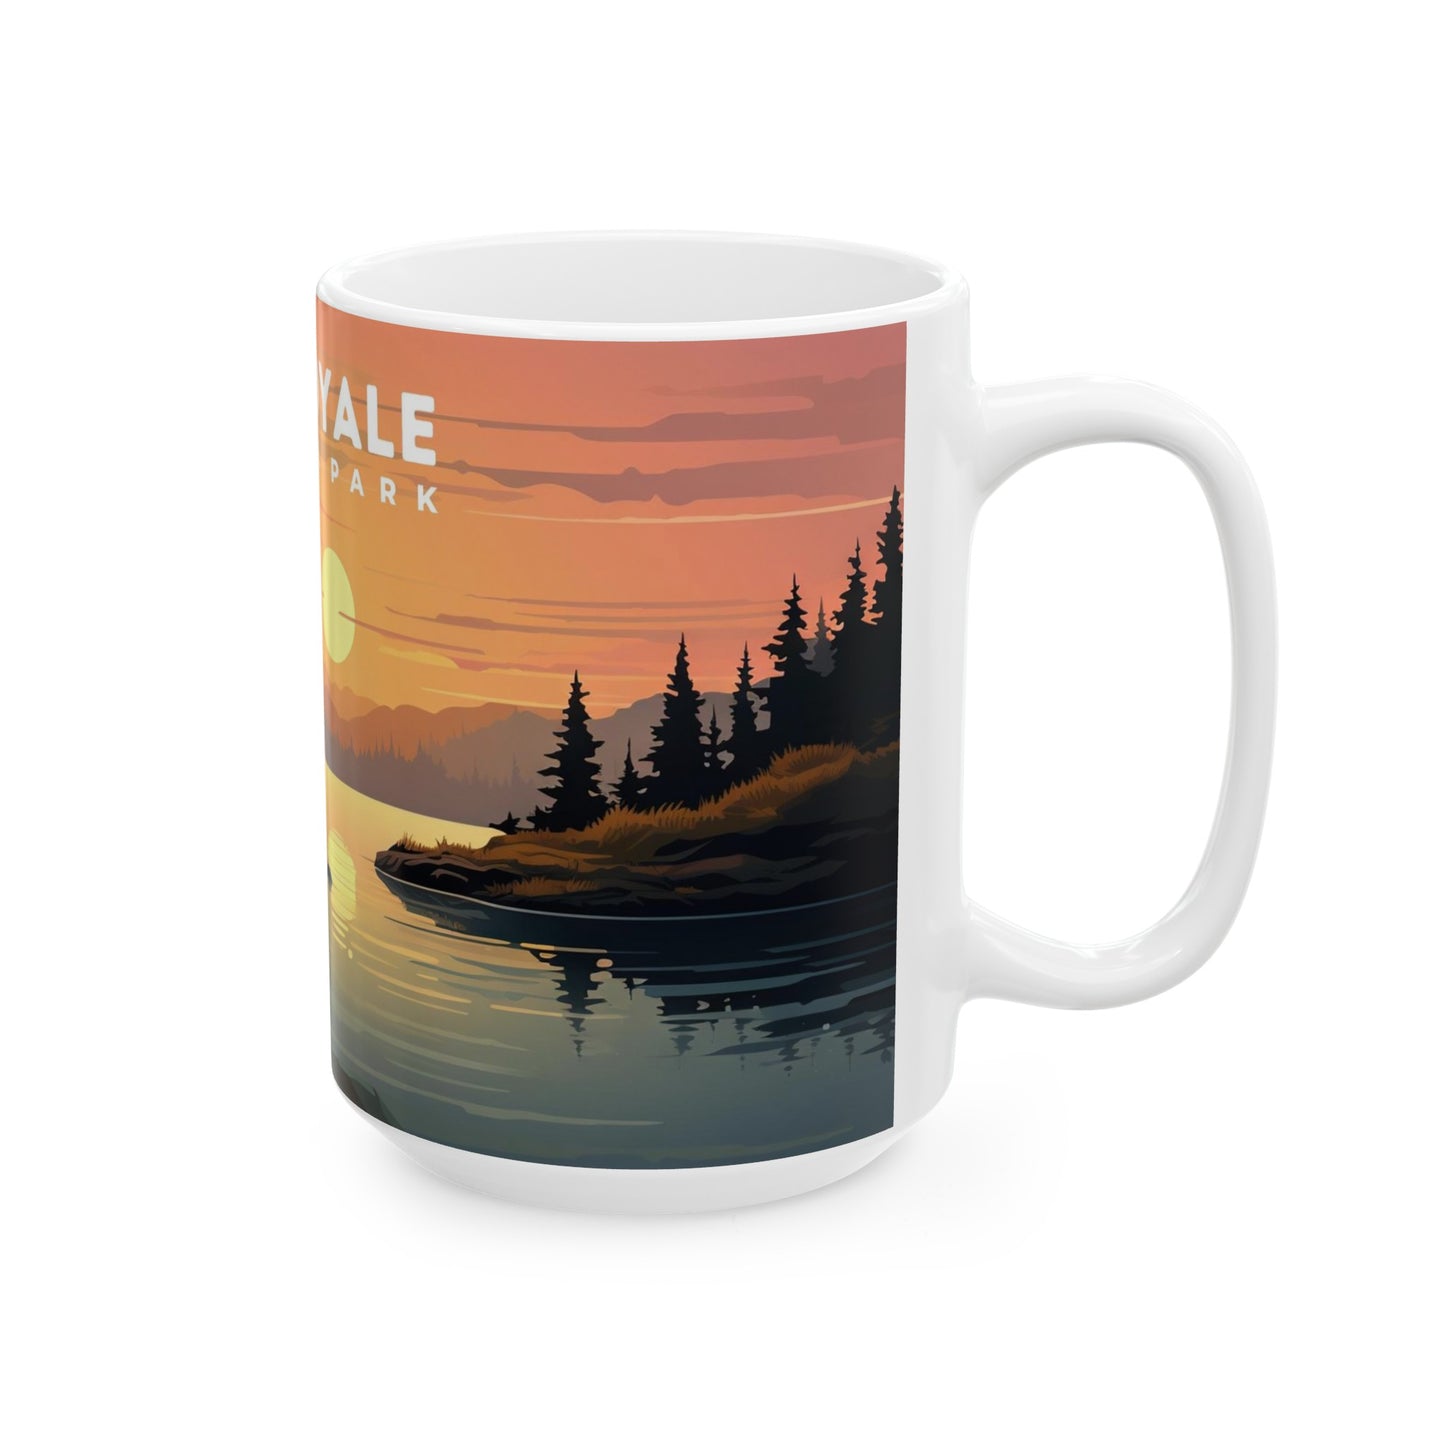 Isle Royale National Park Mug | White Ceramic Mug (11oz, 15oz)